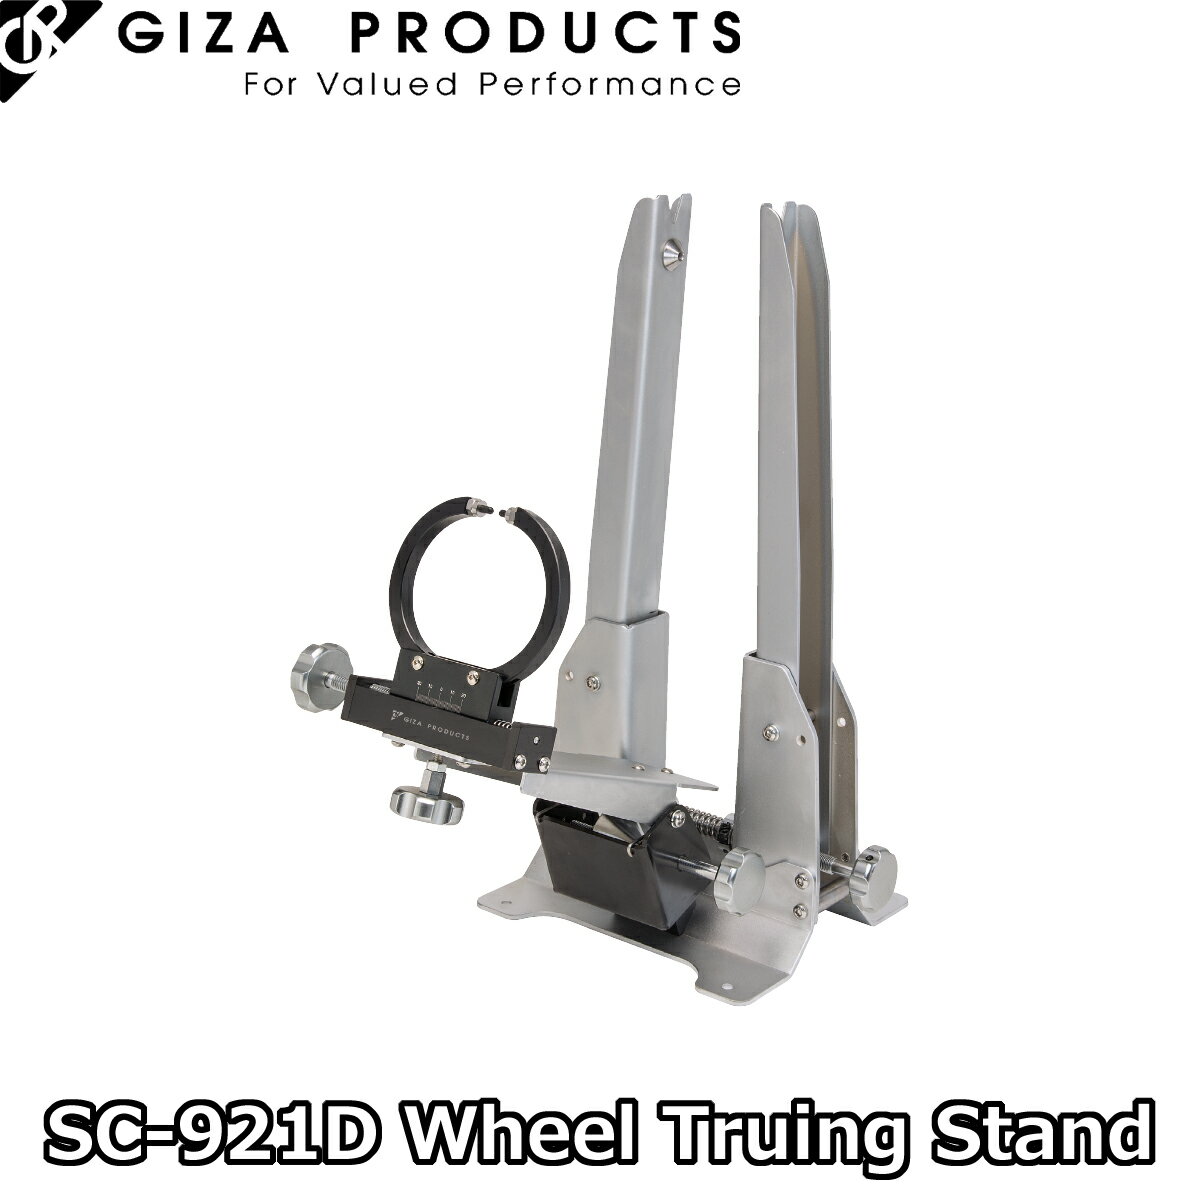 SC-921D Wheel Truing Stand SC-921D ホイール トゥルーイング スタンド 29" ホイールまでの振れ取りがタイヤを付けたままおこなえる、しっかりとした剛性の振れ取り台。 15 ／ 20mm スルーアクスルにも対応。アーム先端が樹脂製なので、カーボンリムにも対応しています。 アームを閉じた状態での縦振れ測定も可能です。 ブランド名 GIZA PRODUCTS 商品名 SC-921D ホイール トゥルーイング スタンド 材質 スチール 対応ハブ幅 180mm以下 対応ホイール径 クイックリリース:16"~29" スルーアクスル:26"～29" 対応リム幅 90mm サイズ L400〜470 x W310 x H570mm 重量 12.5kg 概要 ● スチール ● 対応ハブ幅 : 〜180mm ● 対応ホイール径 : 16″〜29″(クイックリリース式)、26″〜29″(スルーアクスル式) ● 対応リム幅 : 90mm ● カーボンリム対応 ● 使用サイズ : L400〜470 x W310 x H570mm ● 12.5kg 特徴 ・読みやすい目盛り付きなので、センターゲージがなくても、センター出しが可能。 ・15/20mm スルーアクスル ハブにも対応 ・アームが幅広く開くので、29" ホイールまでの触れ鳥がタイヤをつけたままでおこなえます。 ・カーボンリムにも対応する樹脂製の先端部分 ・台座部分に作業台などに固定するための穴を備えています。